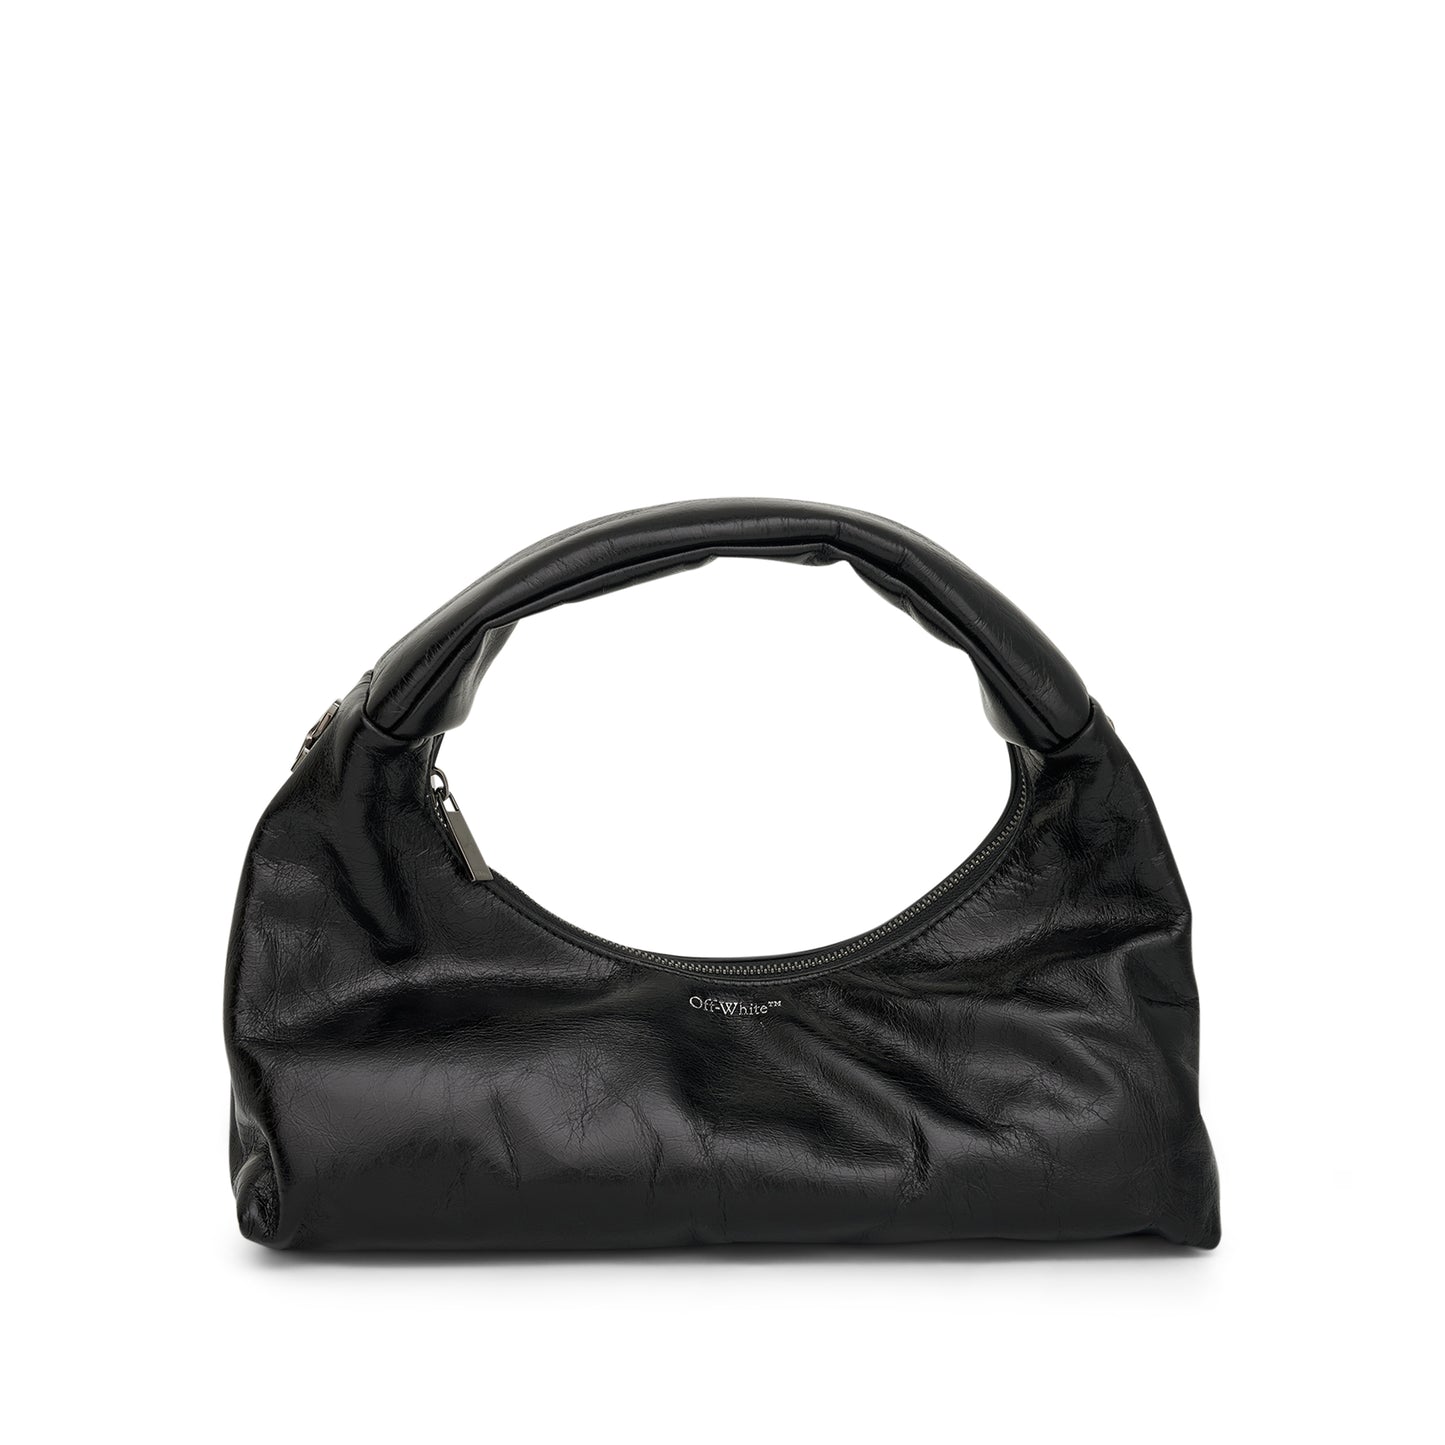 Arcade Shoulder Bag in Black